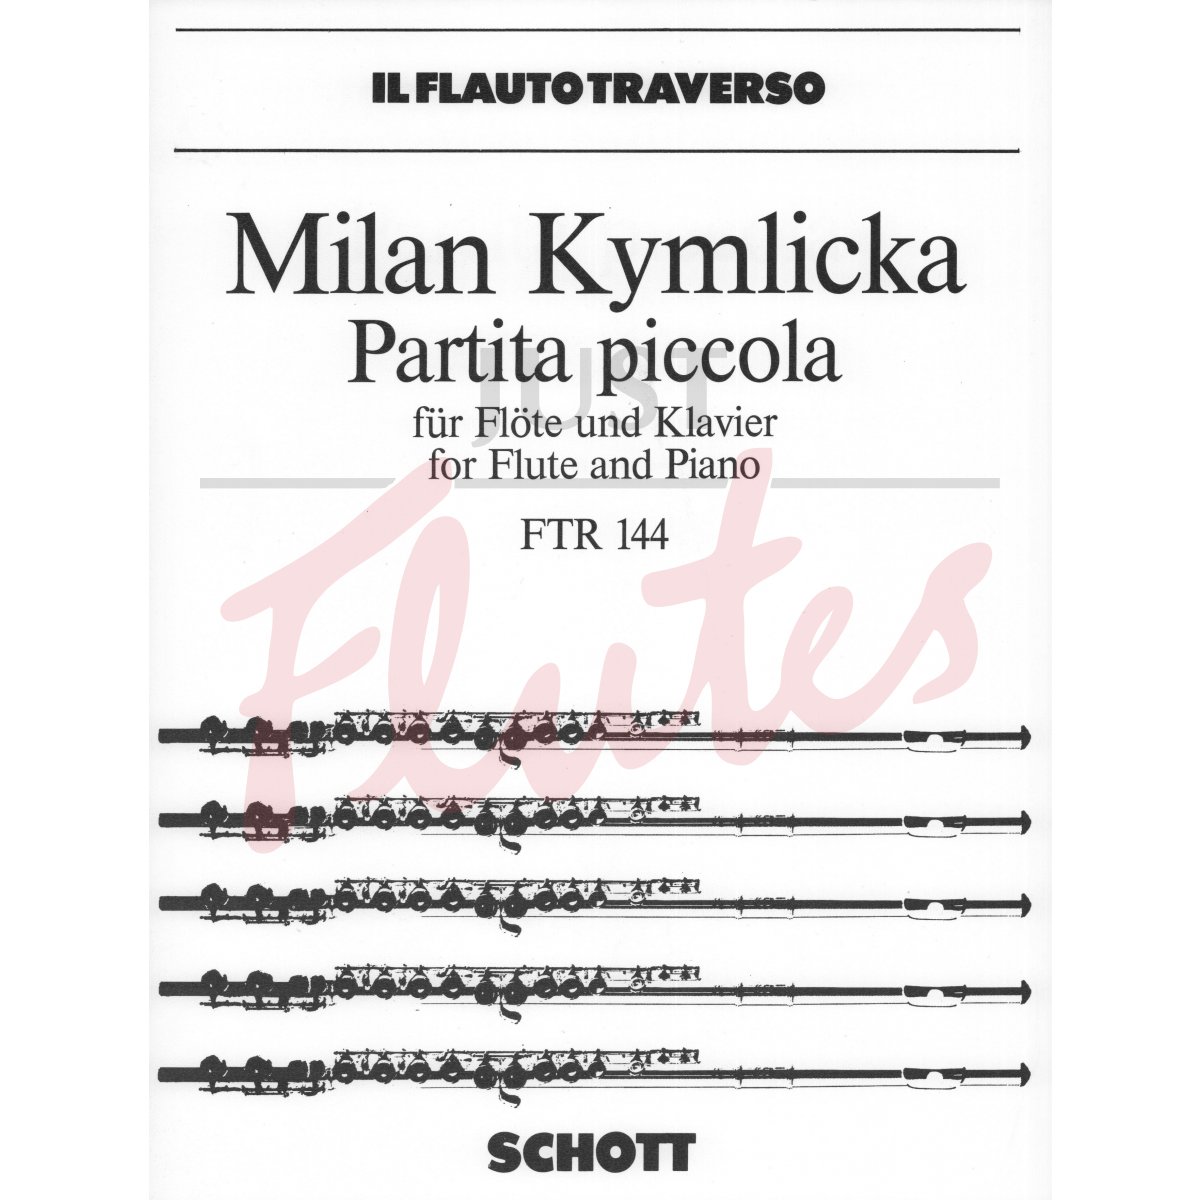 Partita Piccola for Flute and Piano